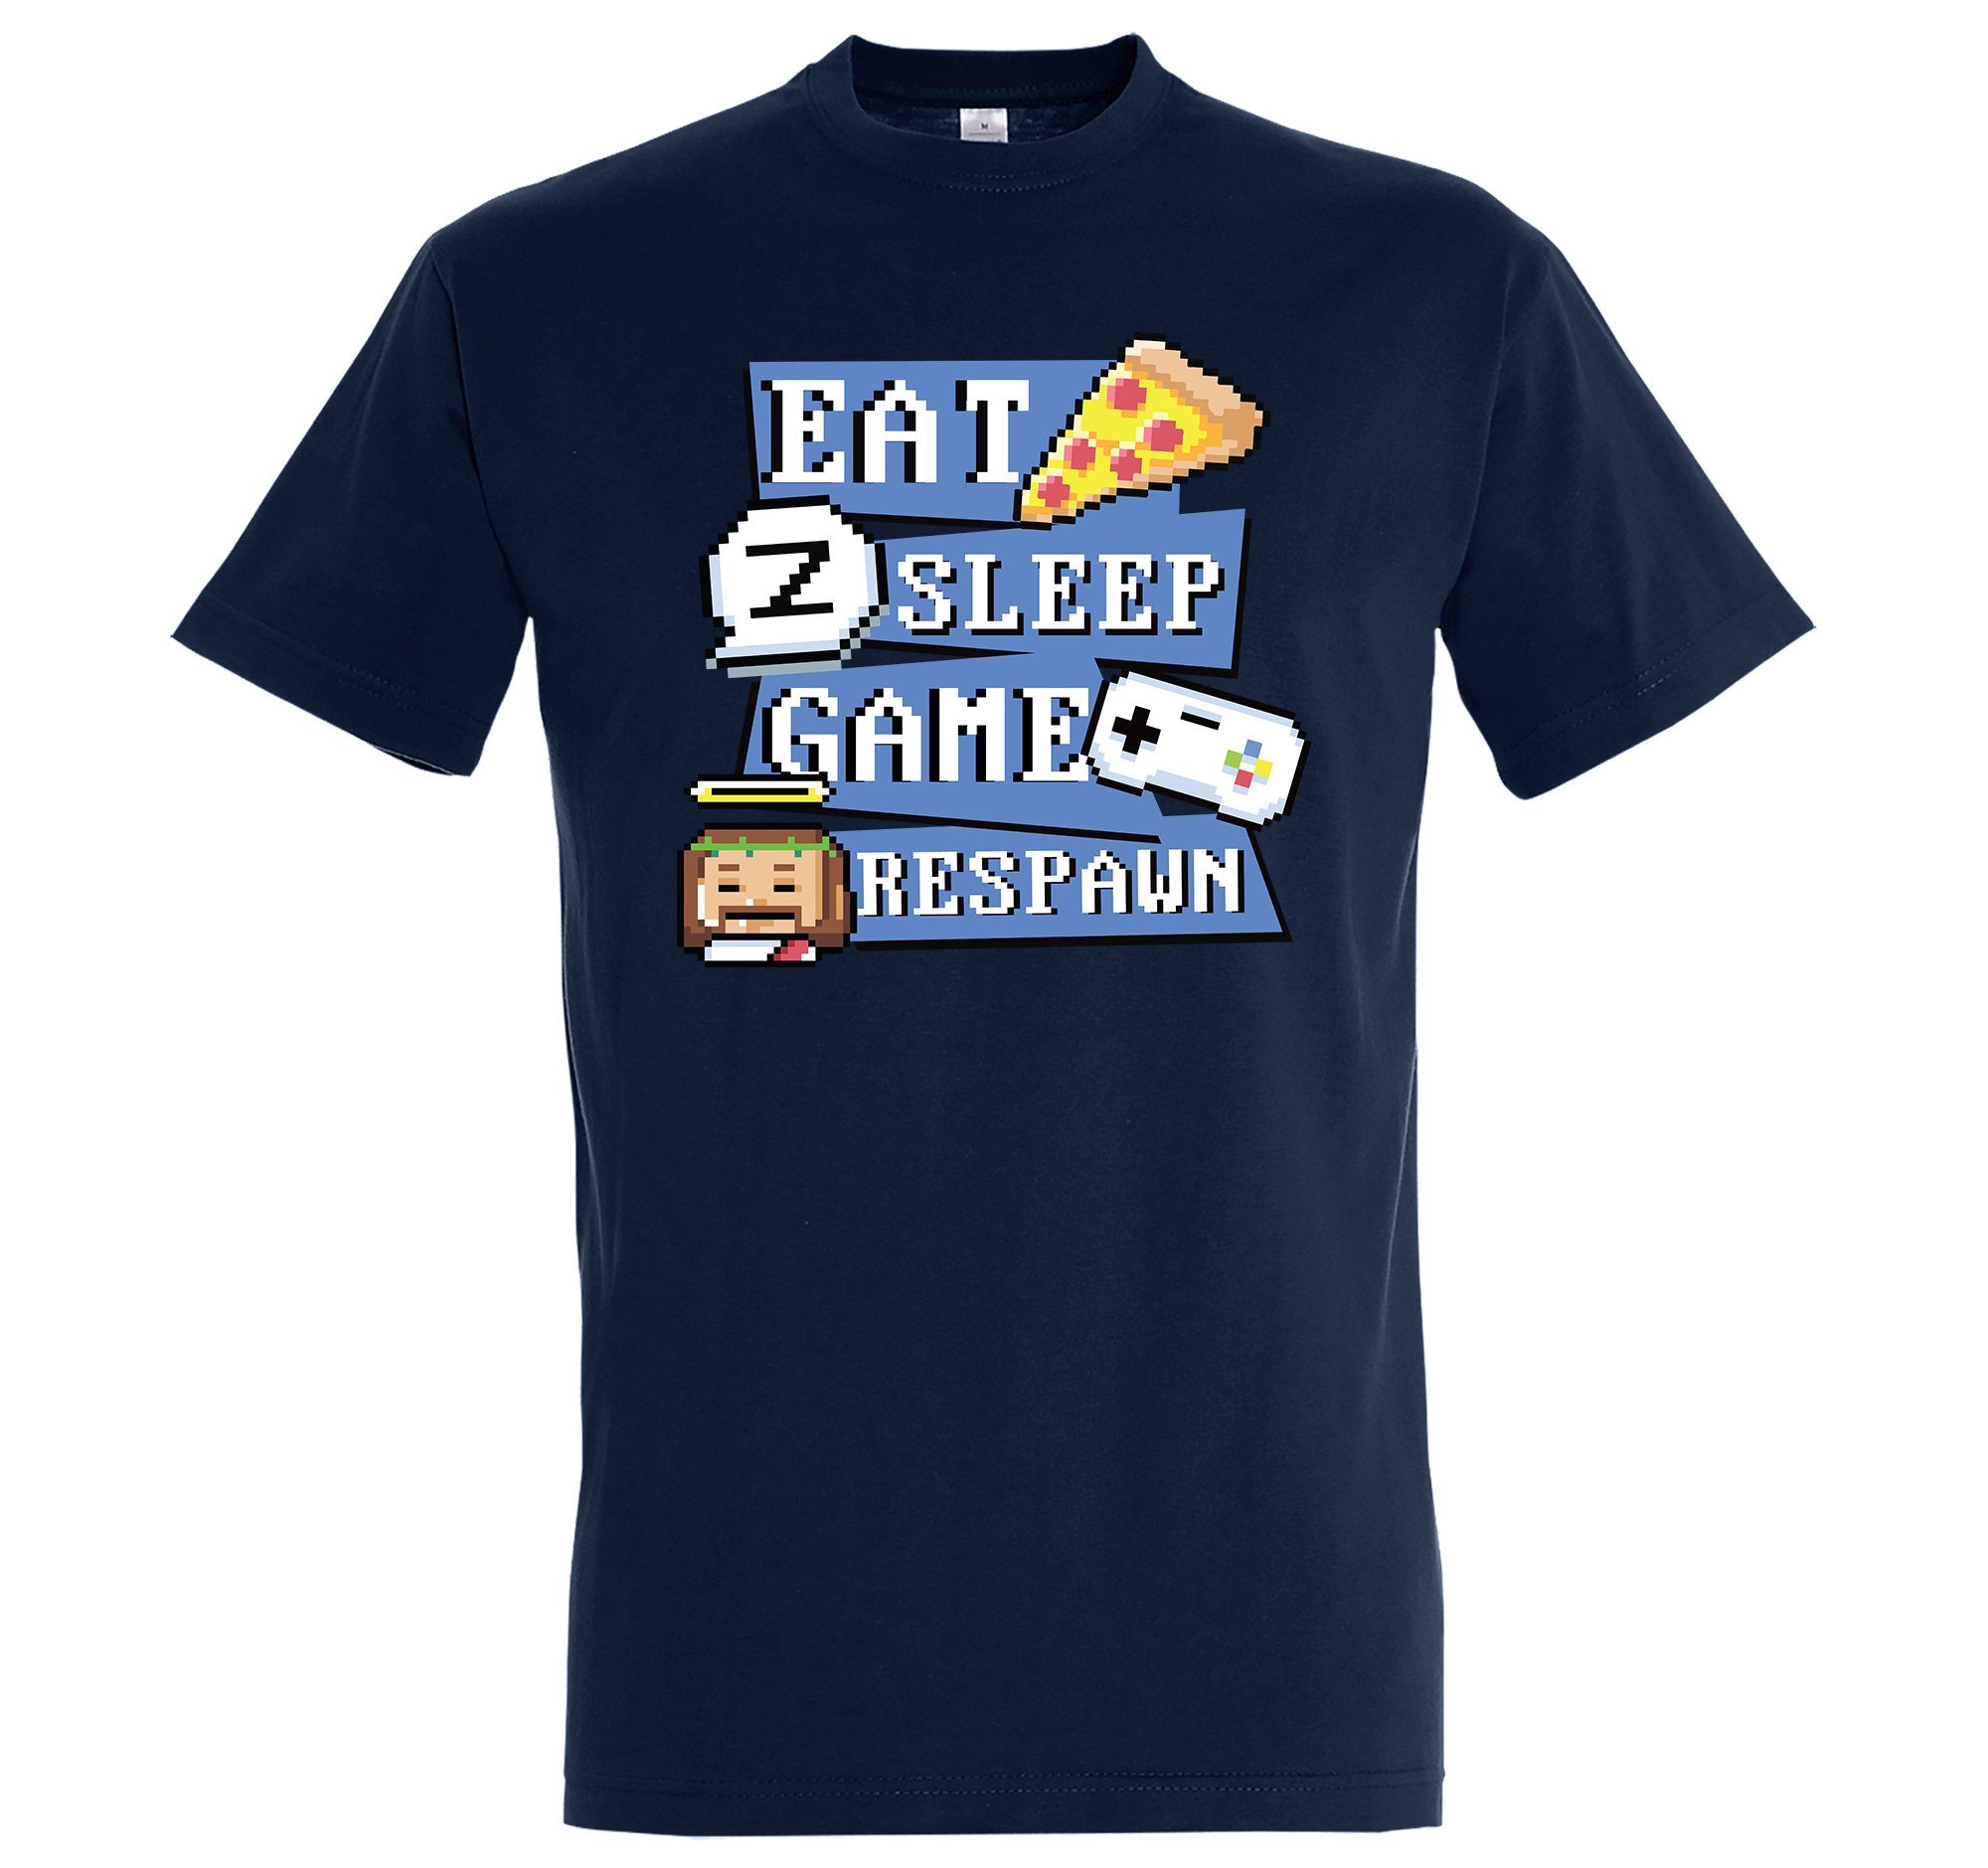 Youth Designz T-Shirt "Eat, Sleep, Game, Respawn" Herren Shirt mit trendigem Frontprint Navyblau